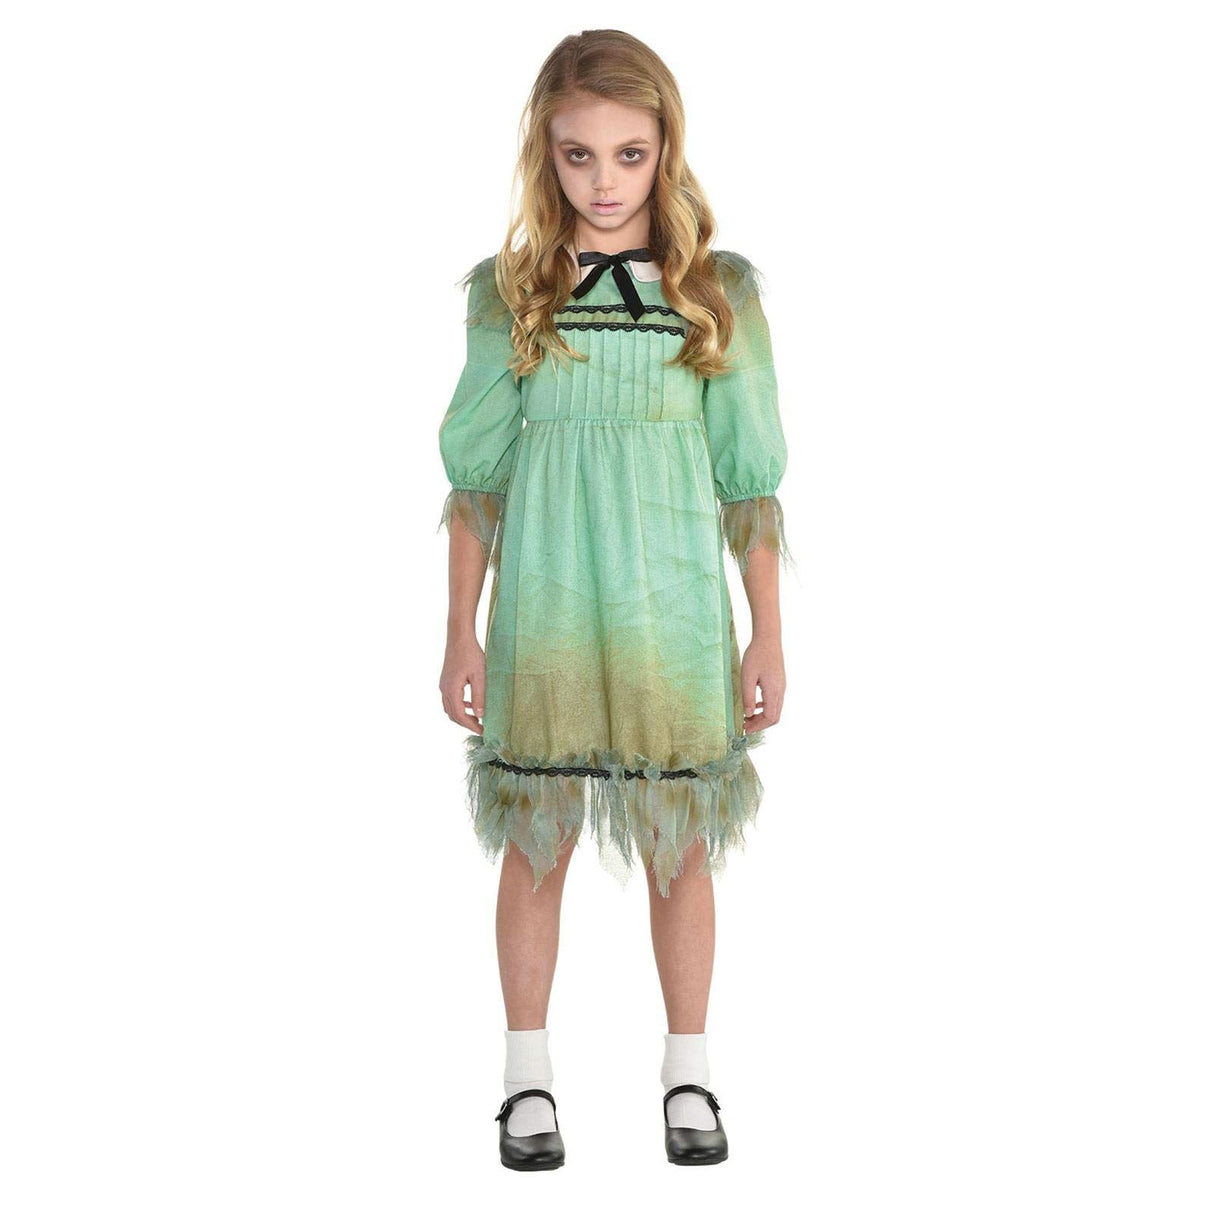 Childs Frightening Creepy Girl Halloween Costume - 6-8 Years